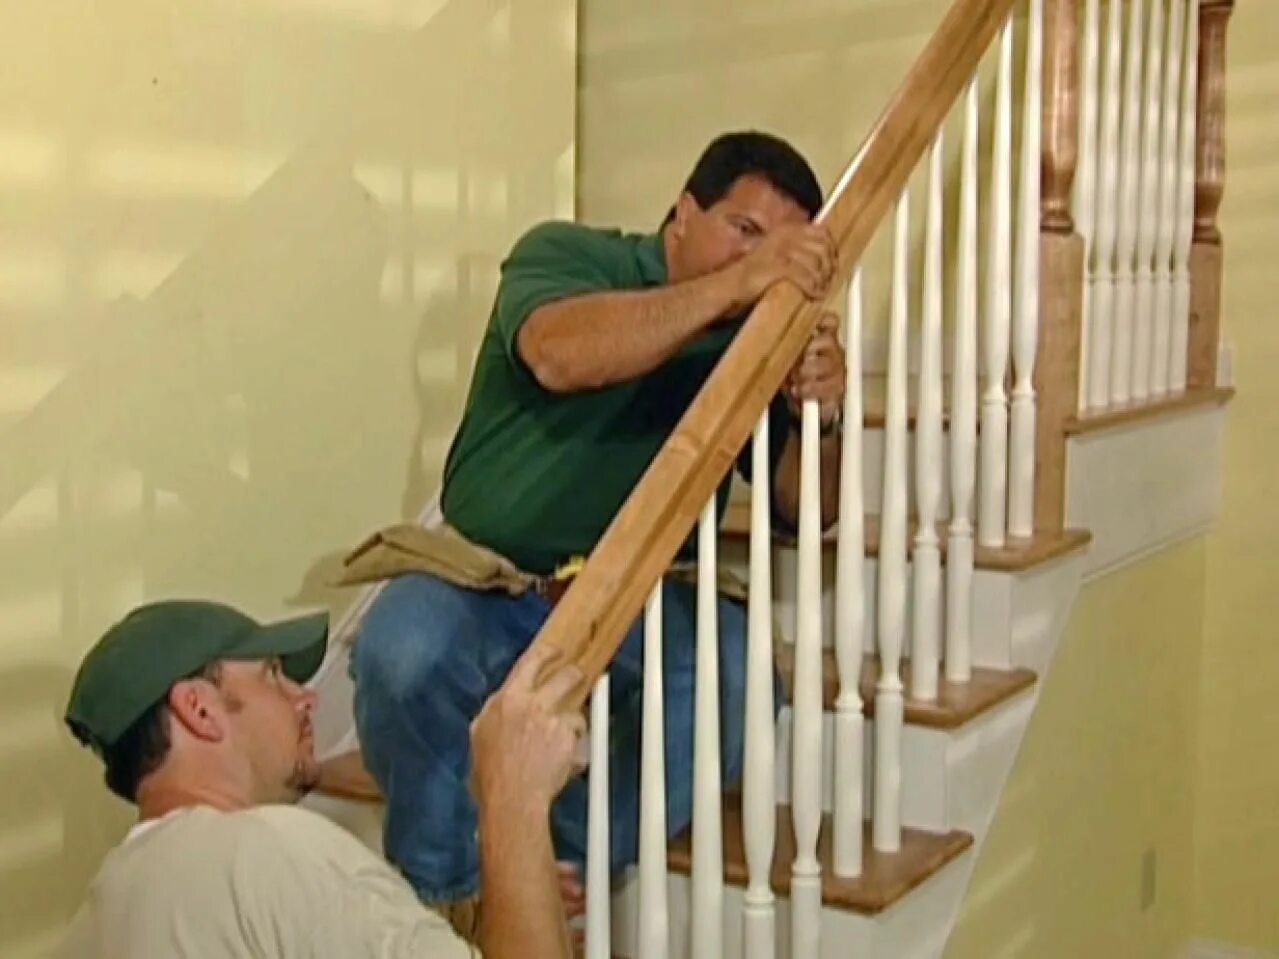 Подняться по деревянной лестнице. Монтаж перил. Крепление столбов ограждения лестницы. Монтаж деревянной лестницы. Монтаж деревянных перил на деревянную лестницу.